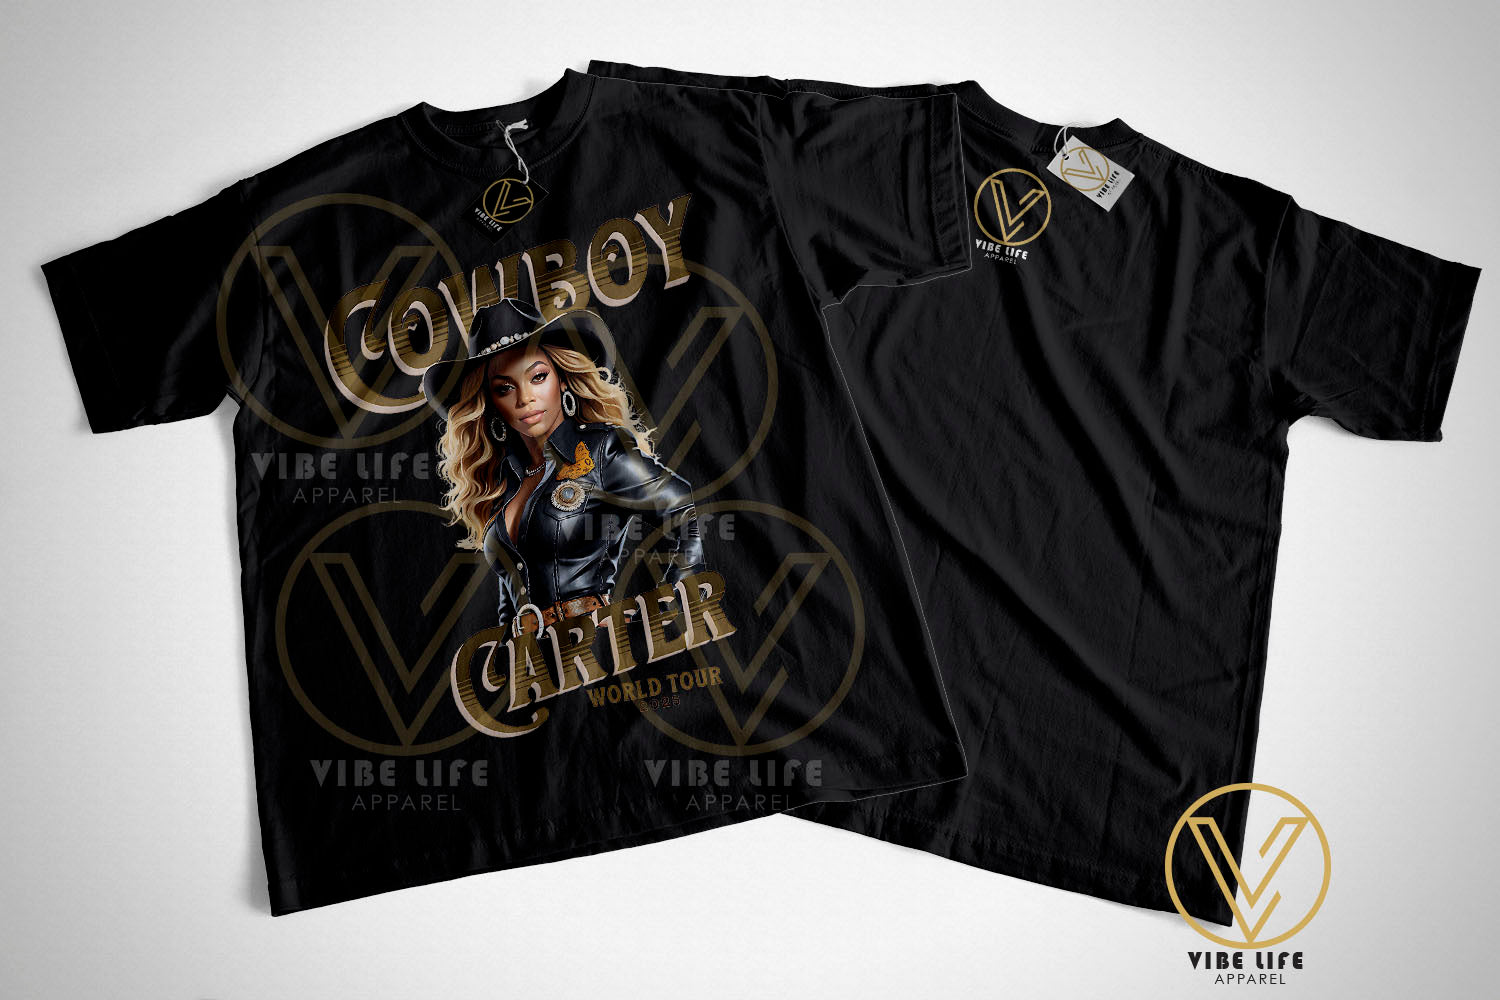 Limited Beyoncé Cowboy Carter World Tour Concert  - Unisex Softstyle Crewneck Tee